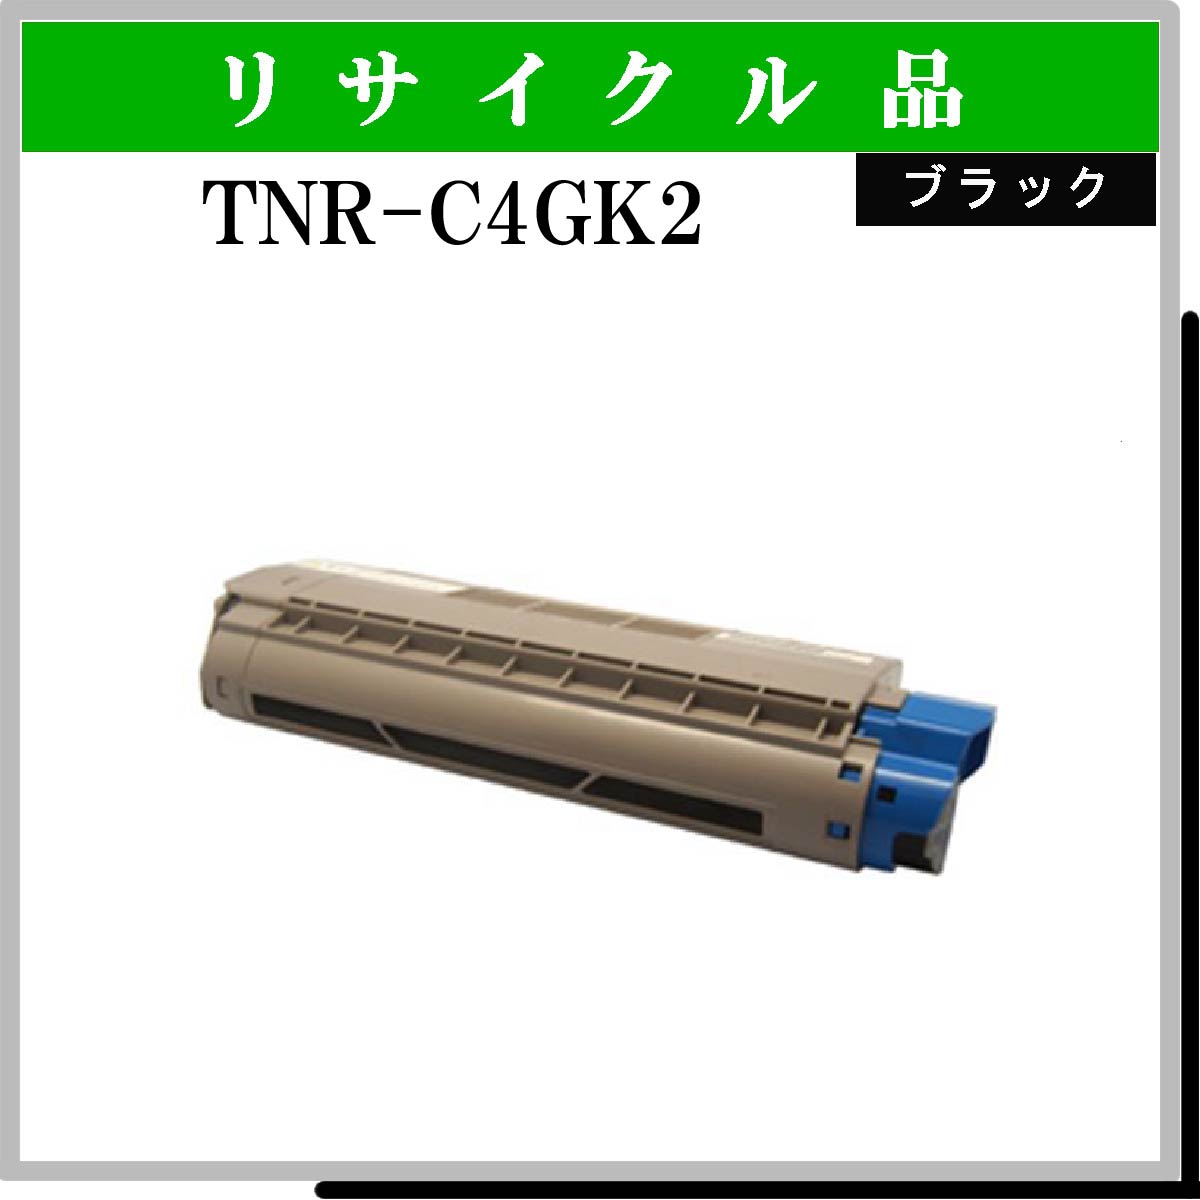 TNR-C4GK2